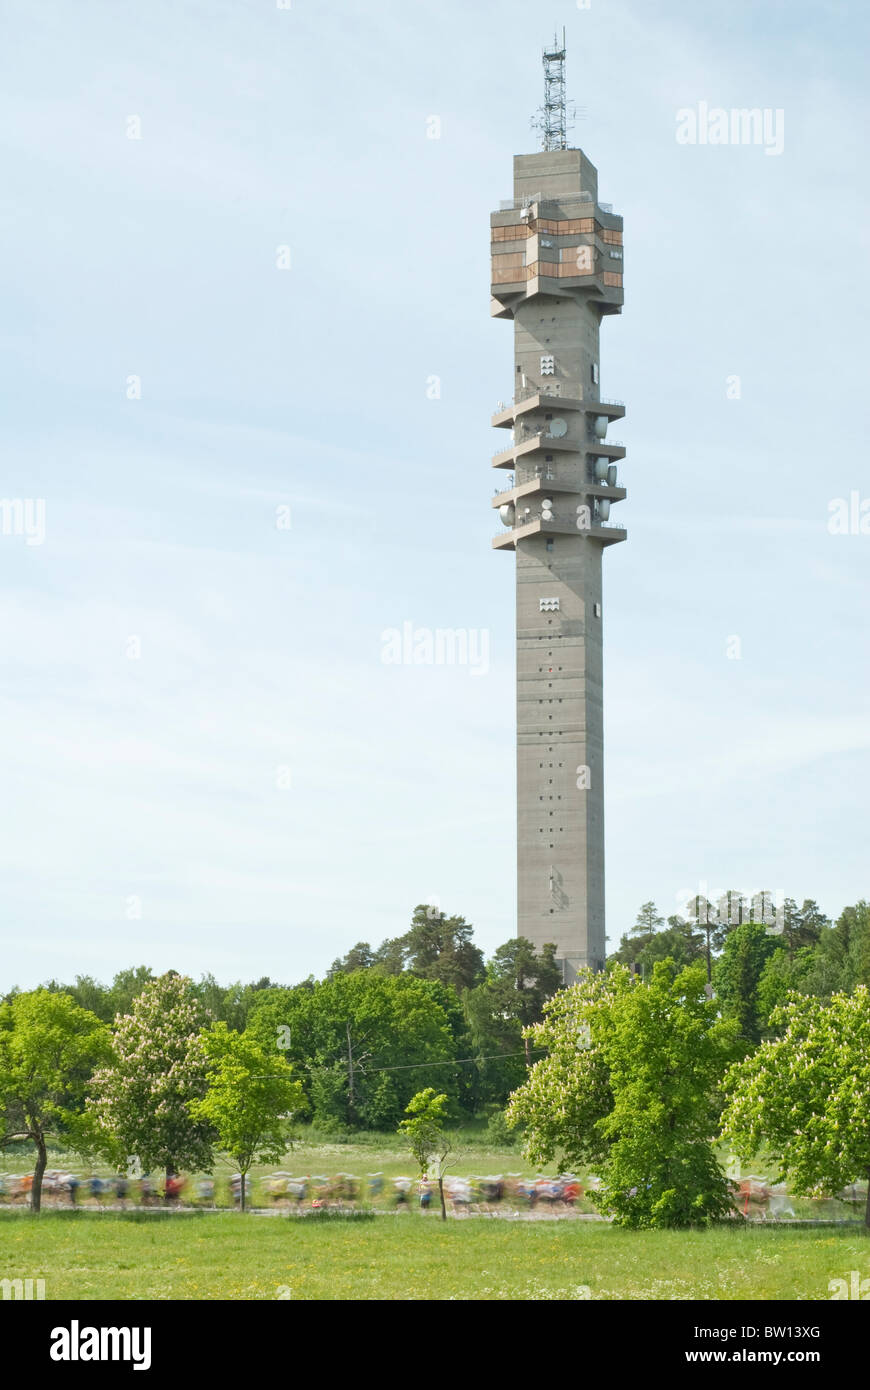 Runners at Stockholm Marathon with communication tower Kaknästornet in the background, Djurgården, Stockholm, Sweden Stock Photo